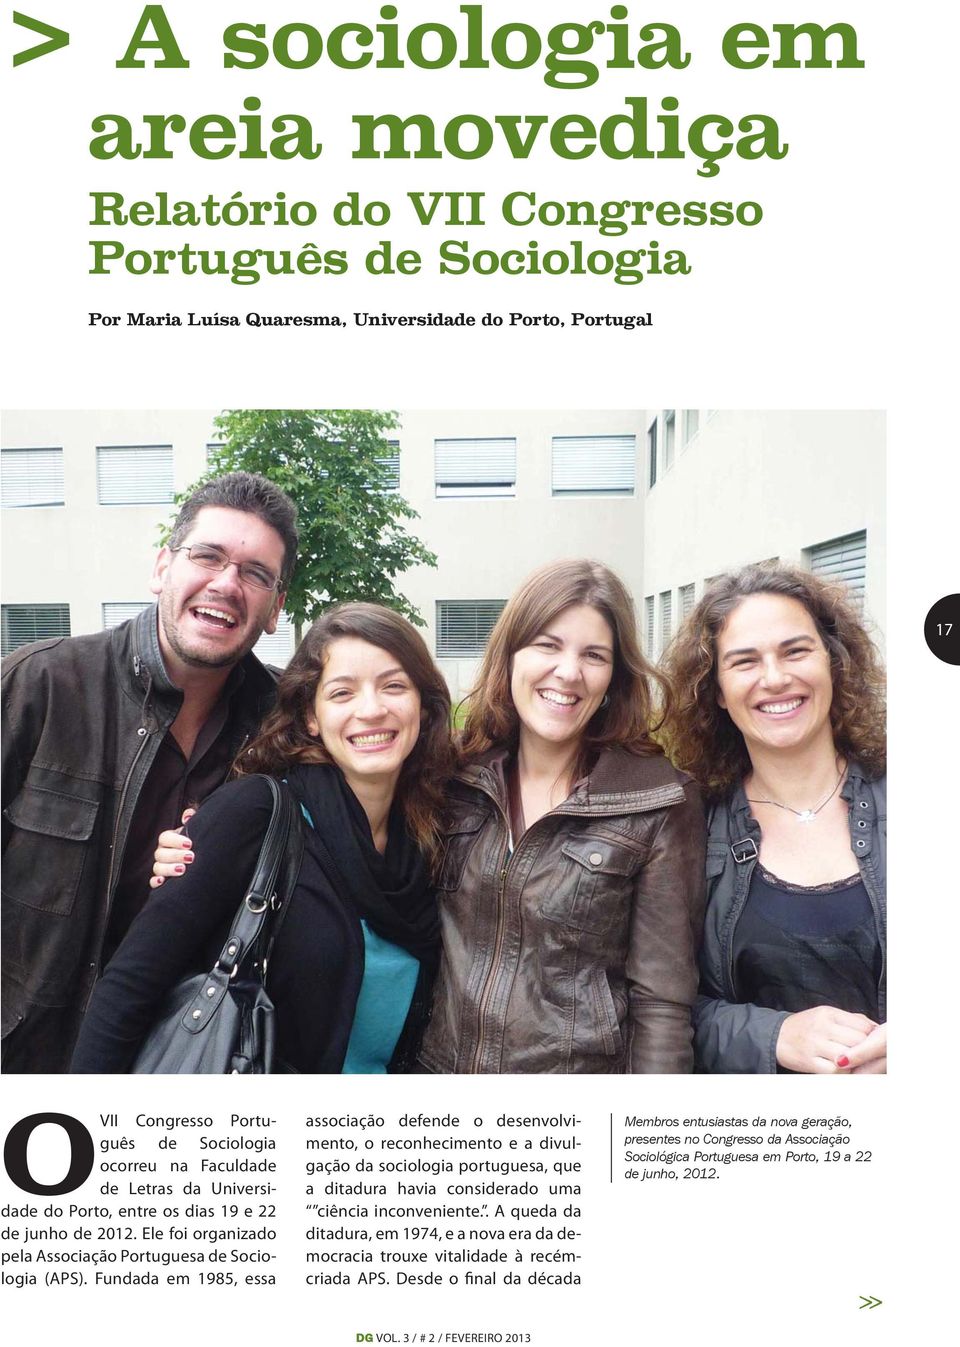 Fundada em 1985, essa associação defende o desenvolvimento, o reconhecimento e a divulgação da sociologia portuguesa, que a ditadura havia considerado uma ciência inconveniente.